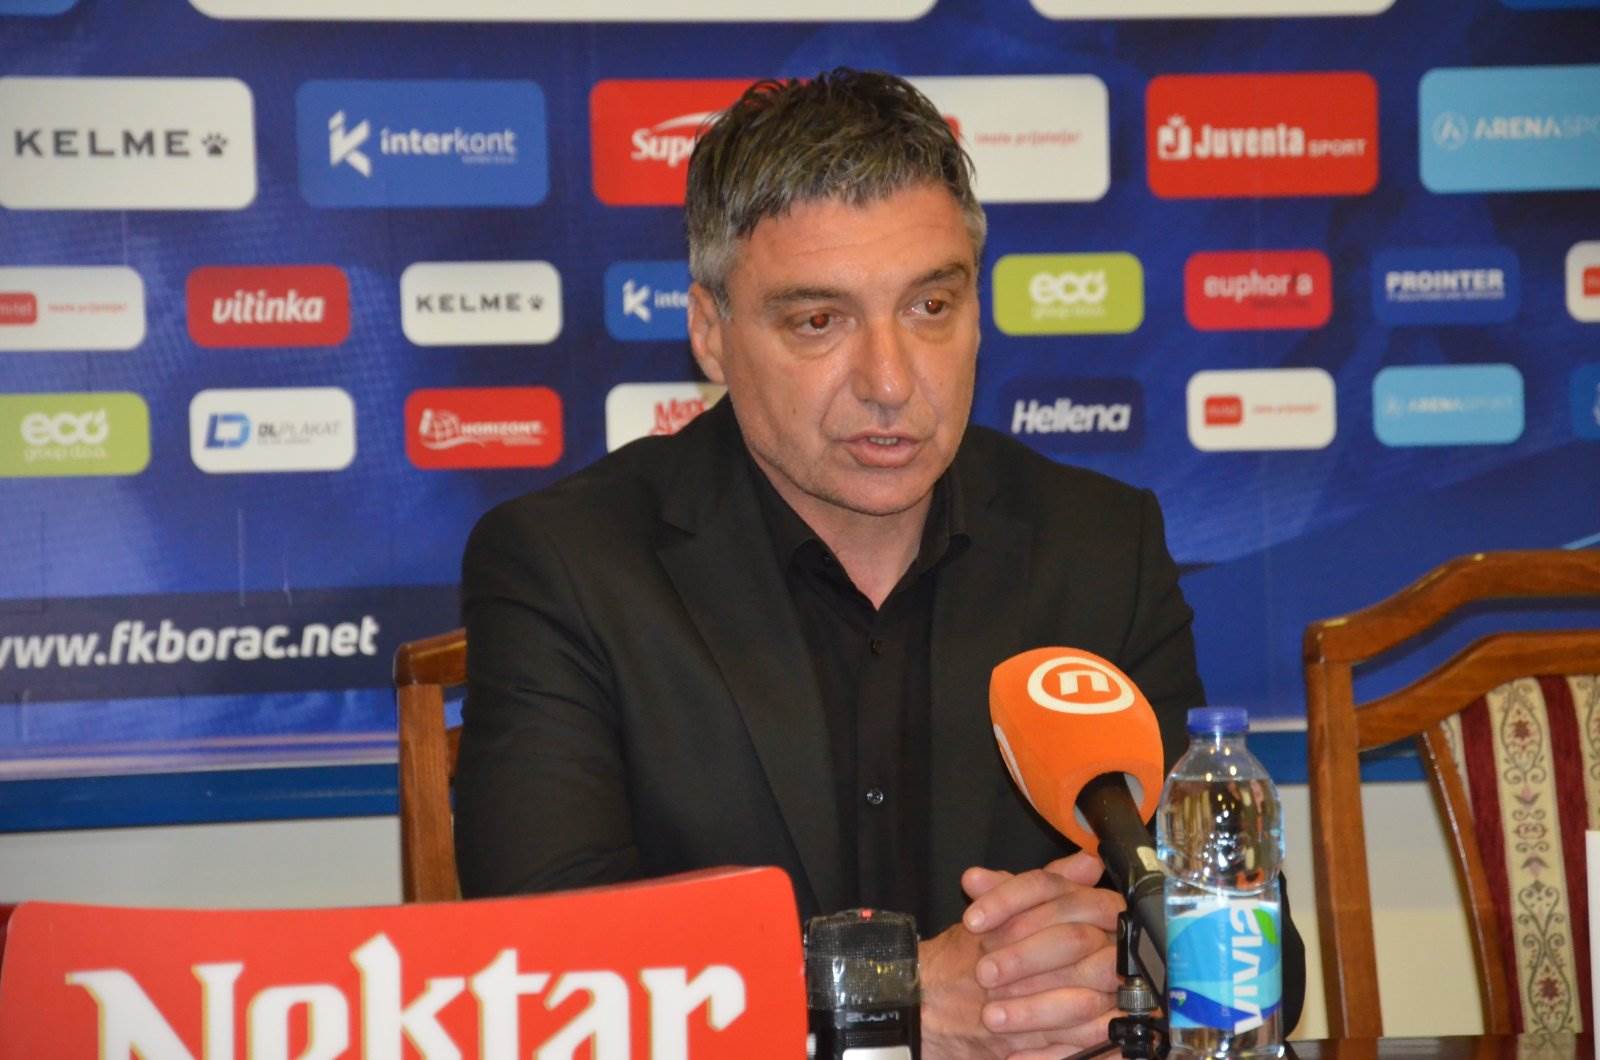  Izjave Vinko Marinović Nermin Bašić poslije utakmice Borac - Željezničar 